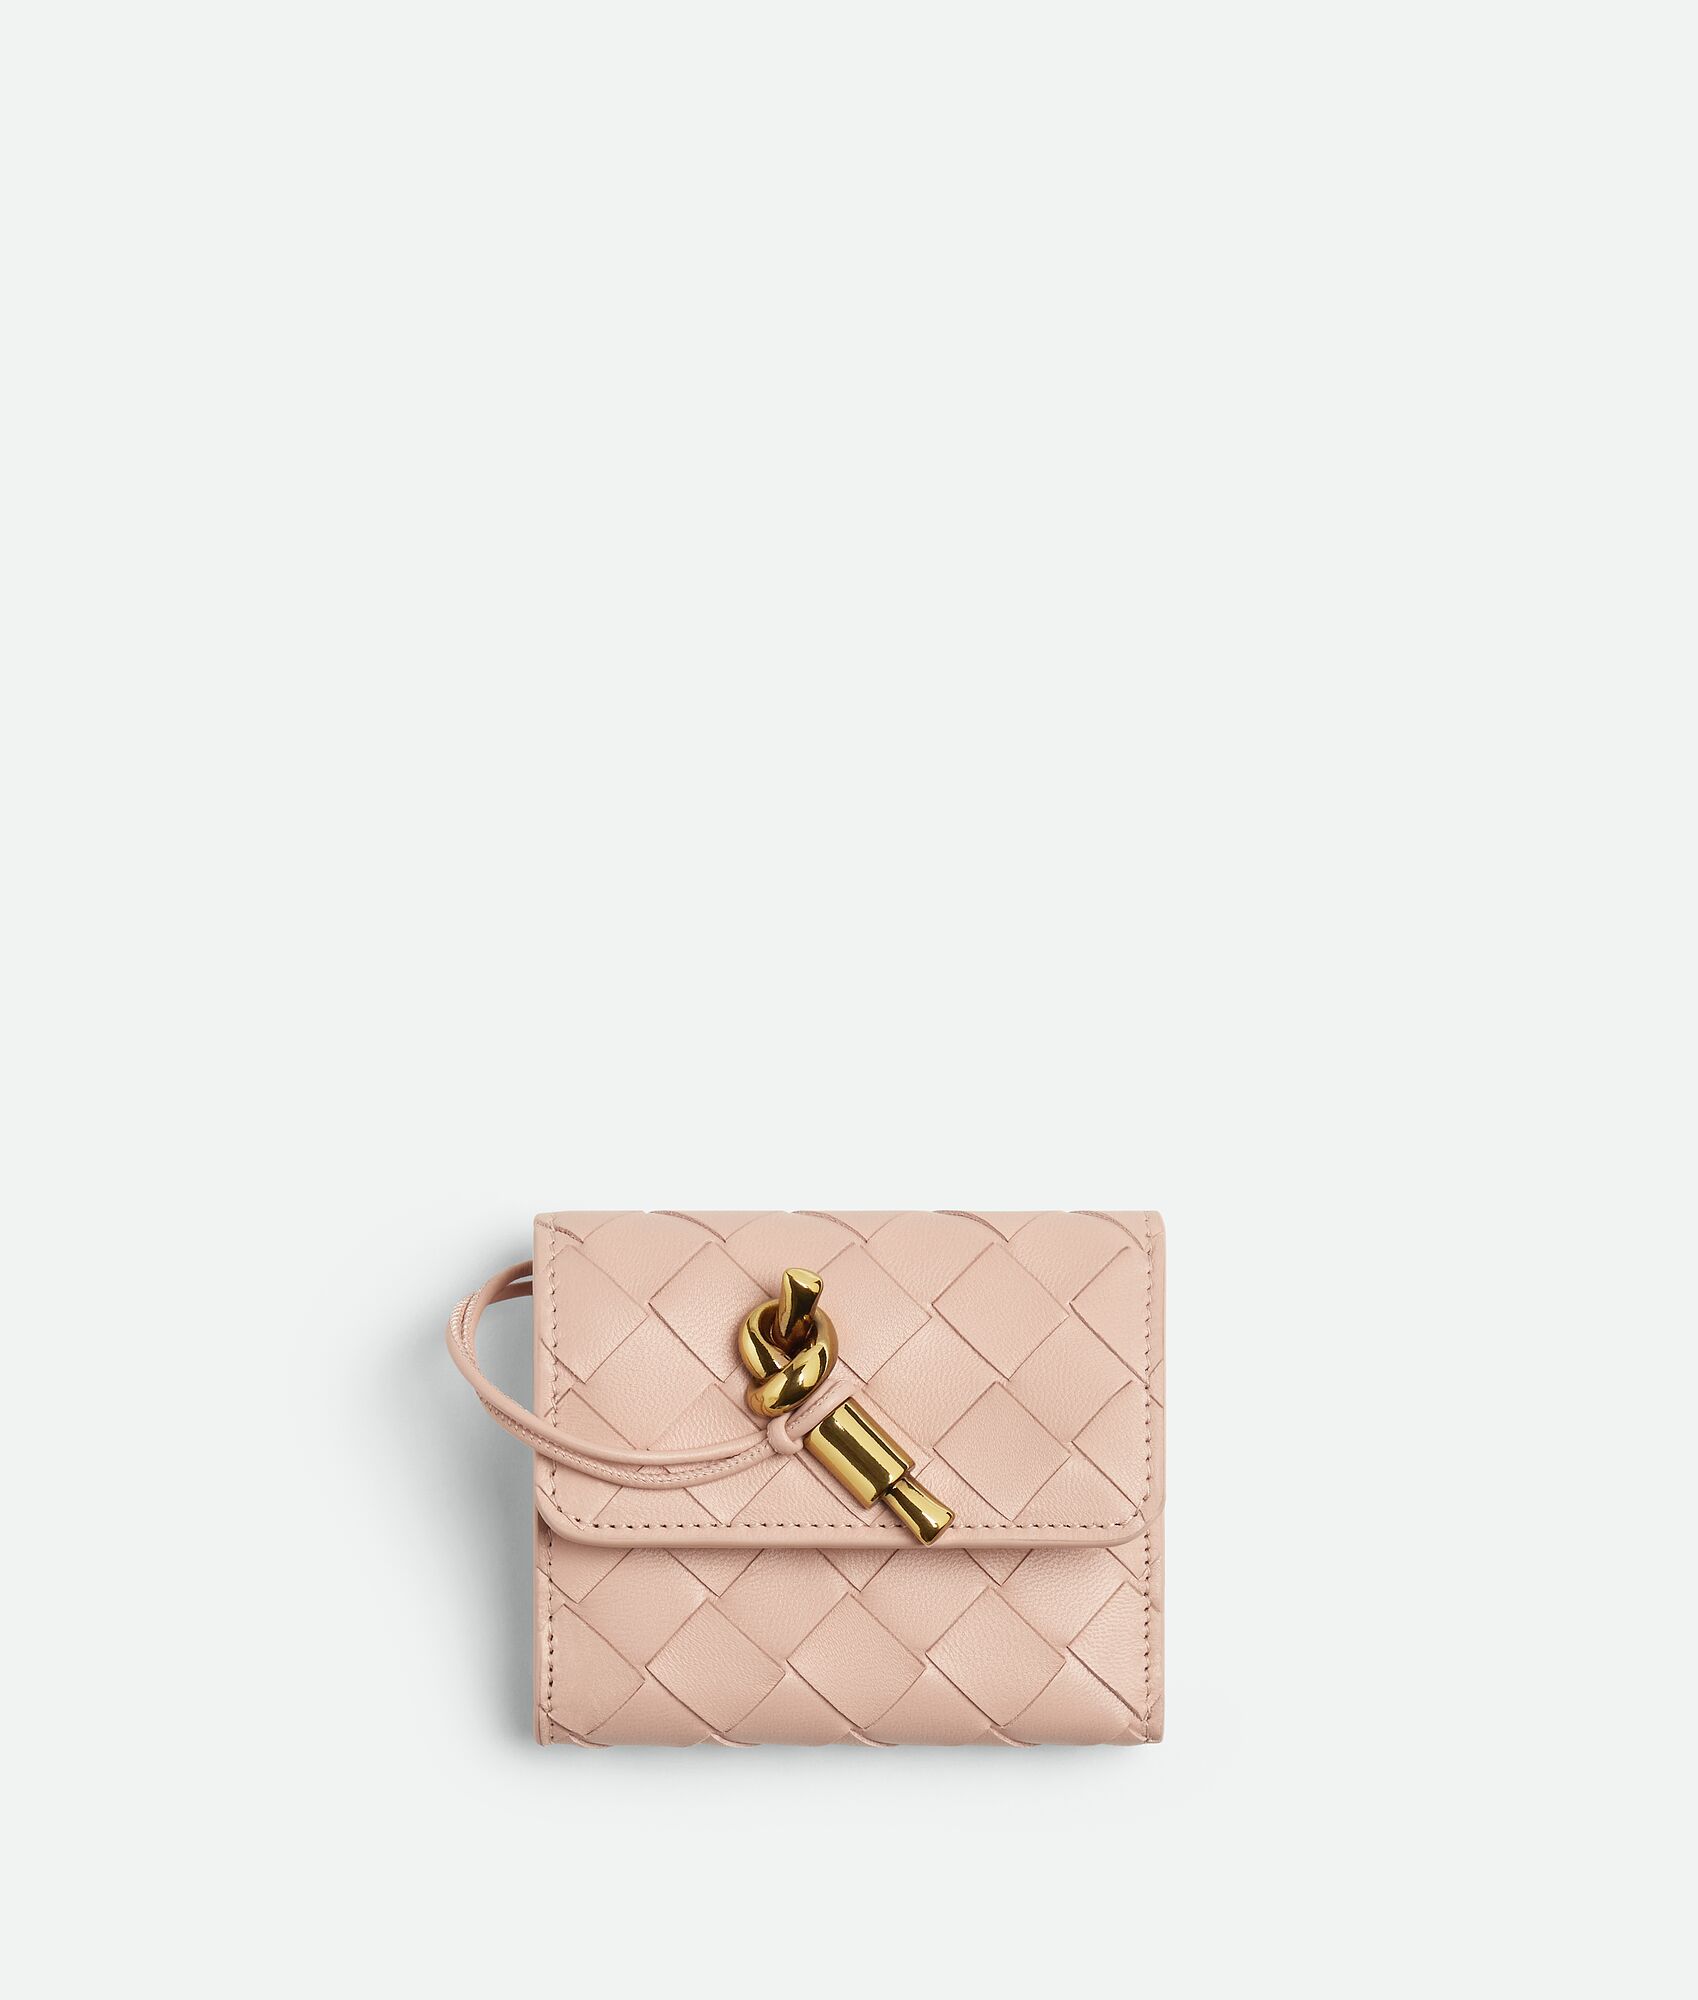 40代女性におすすめなセンスのいいレディース財布はボッテガ・ヴェネタのアンディアーモ 三つ折りファスナーウォレット